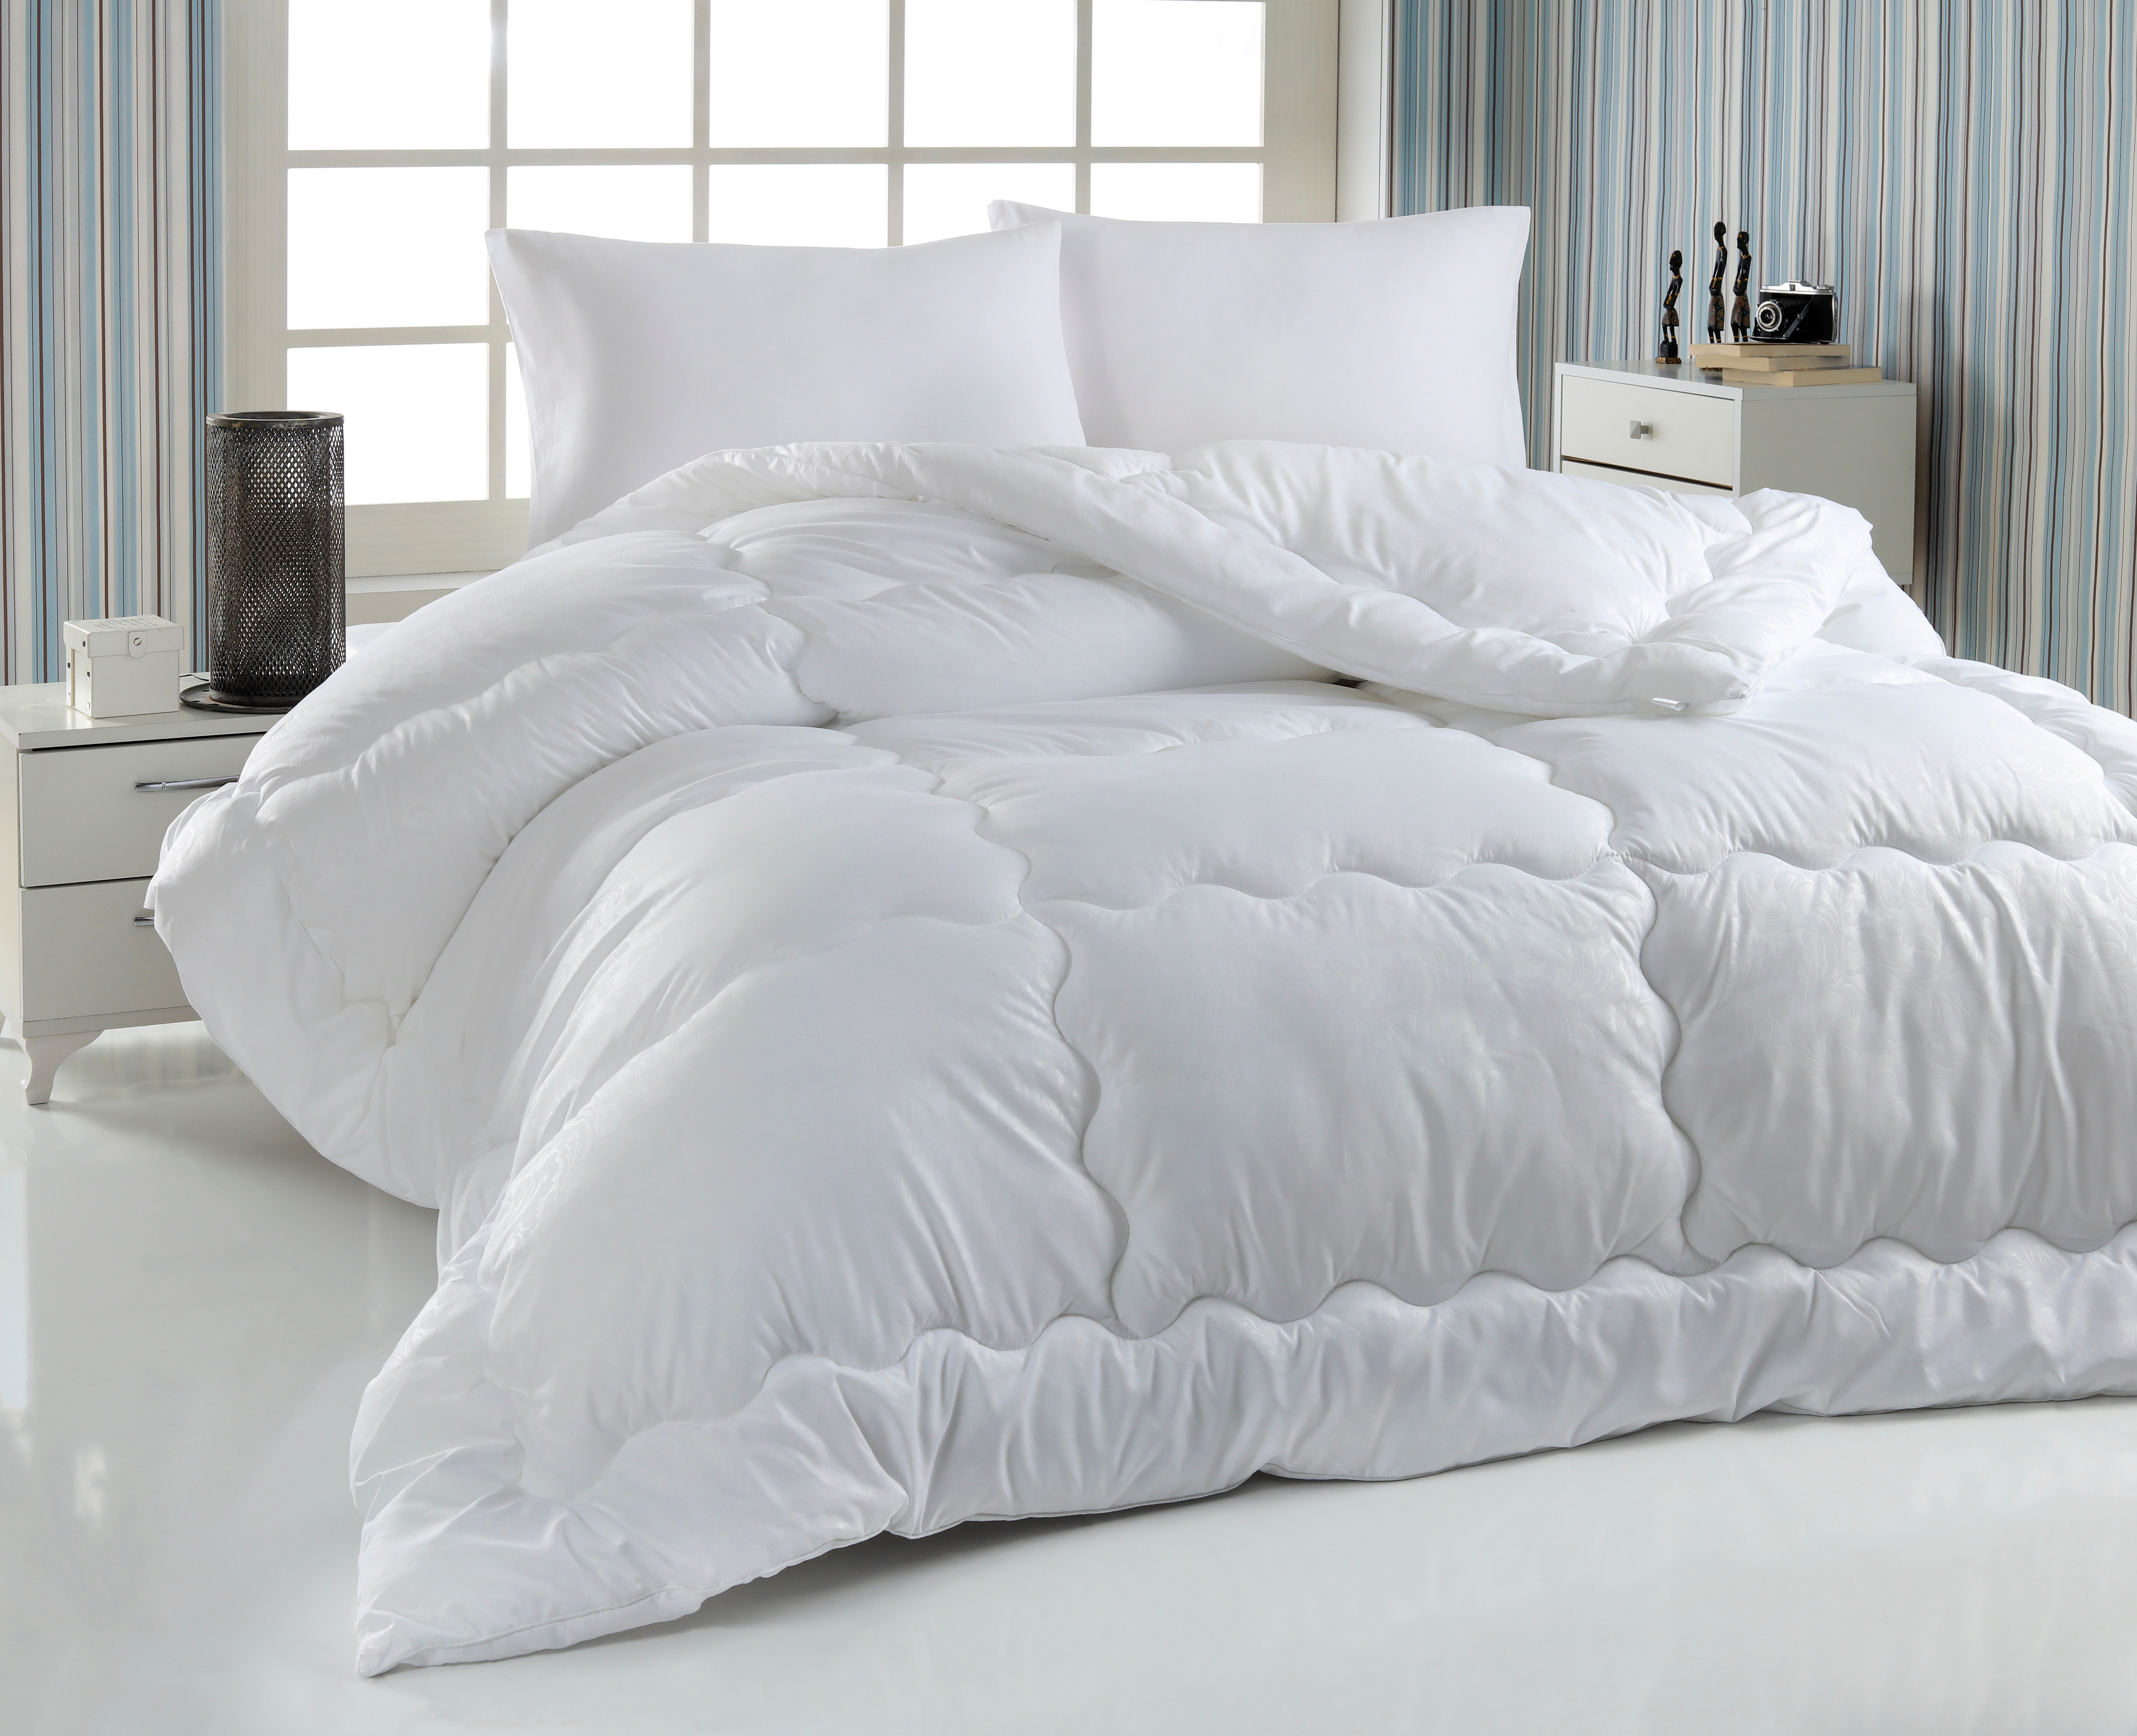 Comforters Shutterstock 1157431528